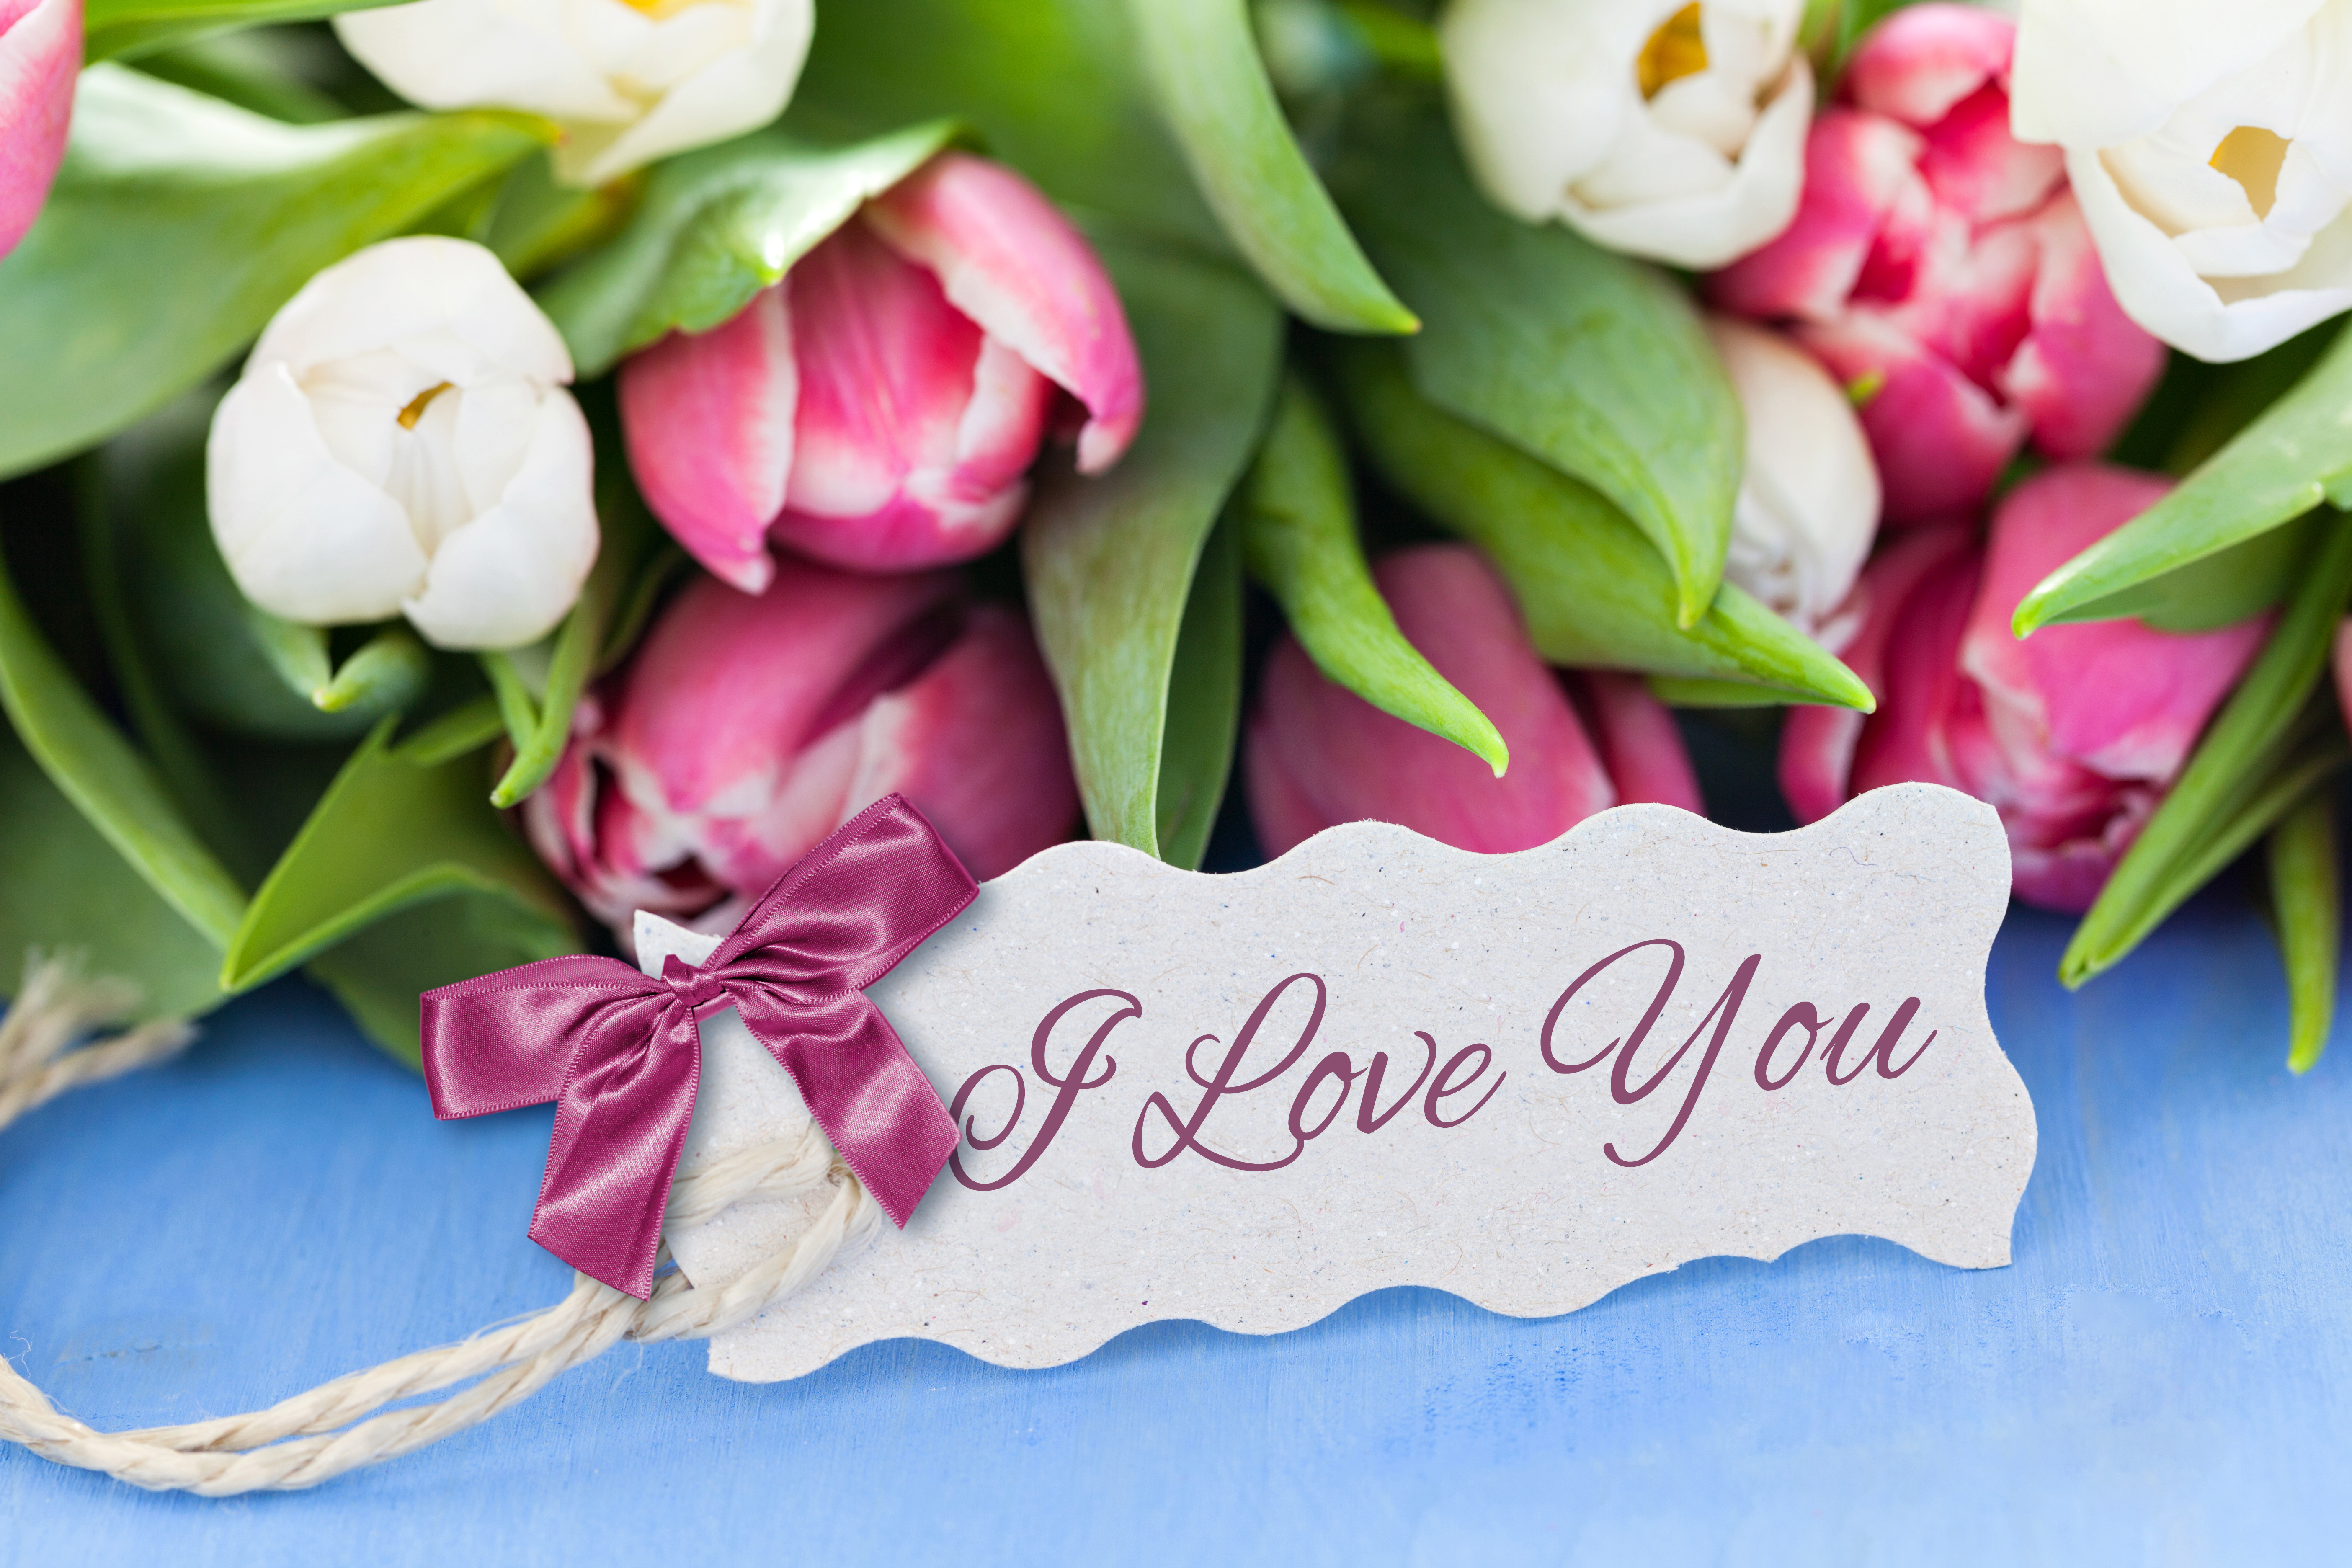 Lovers flowers. Букет тюльпанов открытка. Весенний букет. С днем рождения цветы тюльпаны.